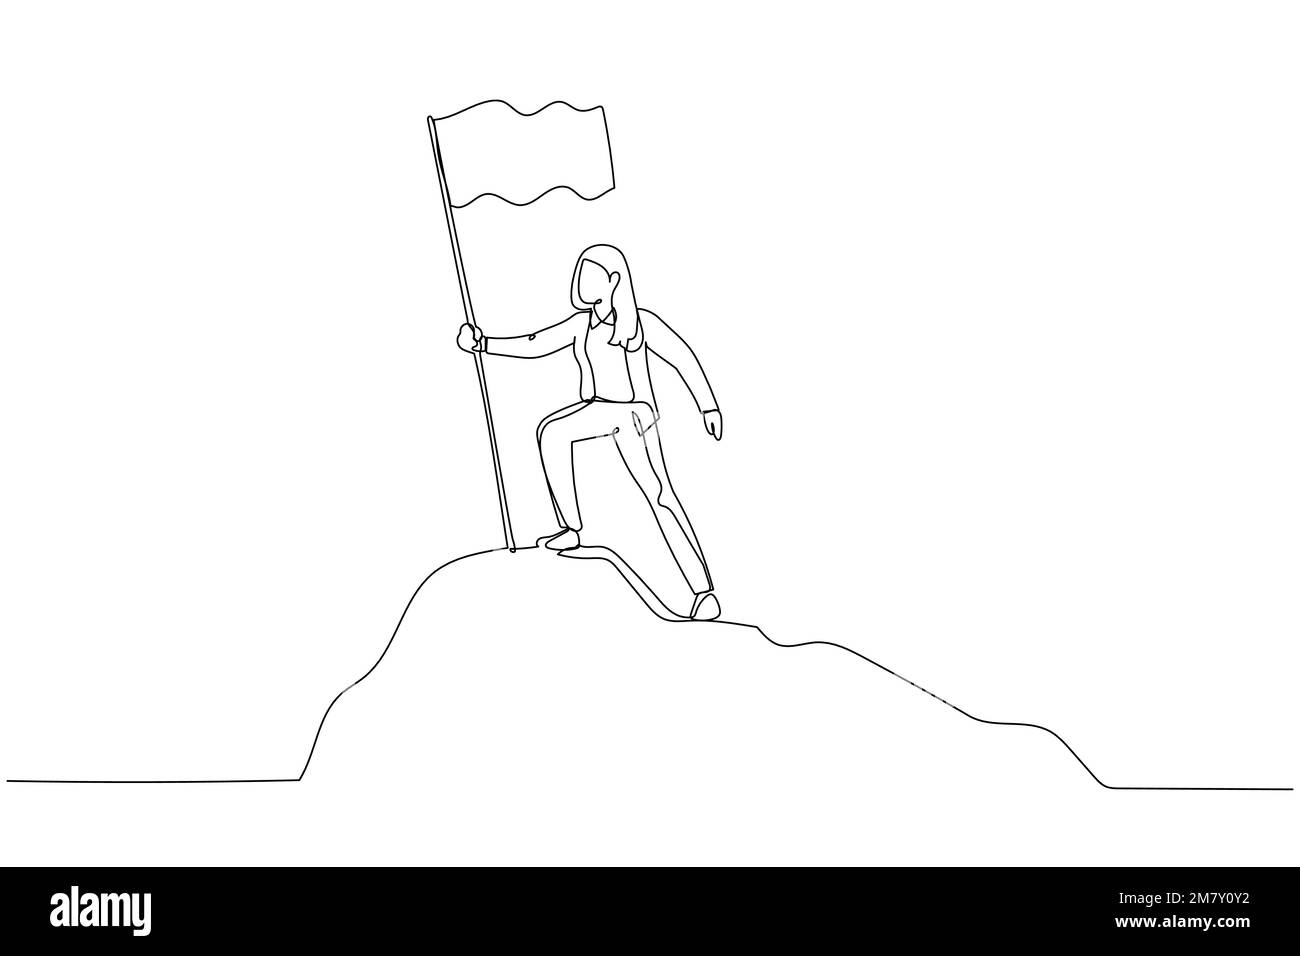 Cartoon einer Geschäftsfrau, die auf dem Gipfel des Berges steht und die Flagge hält wie ein Eroberer. Design im Kunststil mit einer durchgehenden Linie Stock Vektor